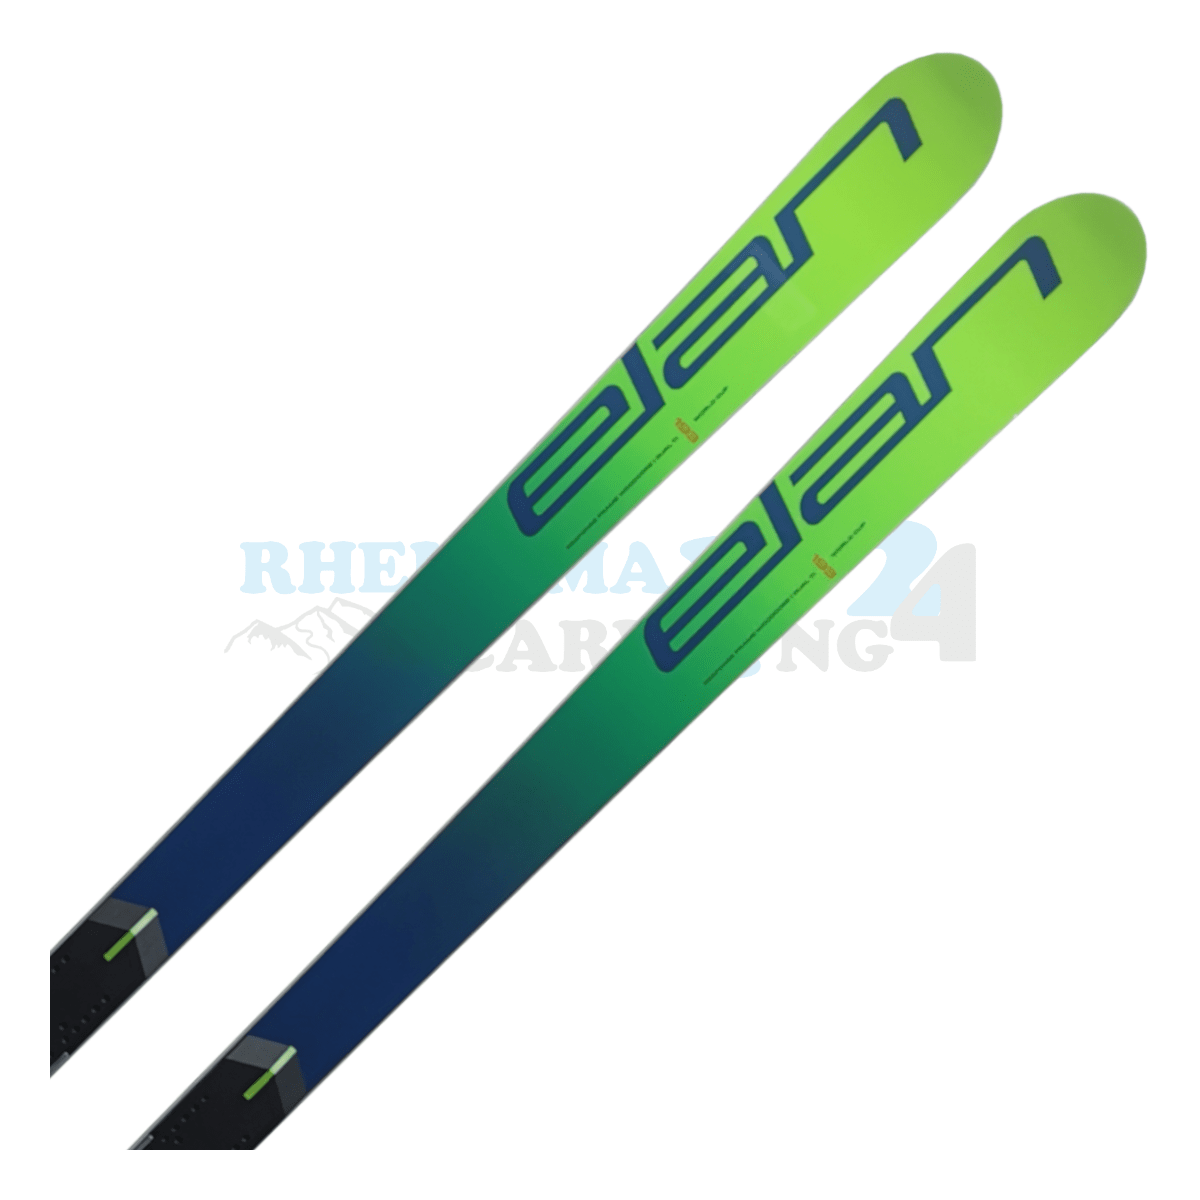 Elan GSX Worldcup FIS mit der Raceplate, der Ski ist in der Farbe grün, Ansicht des oberen Teils des Skis